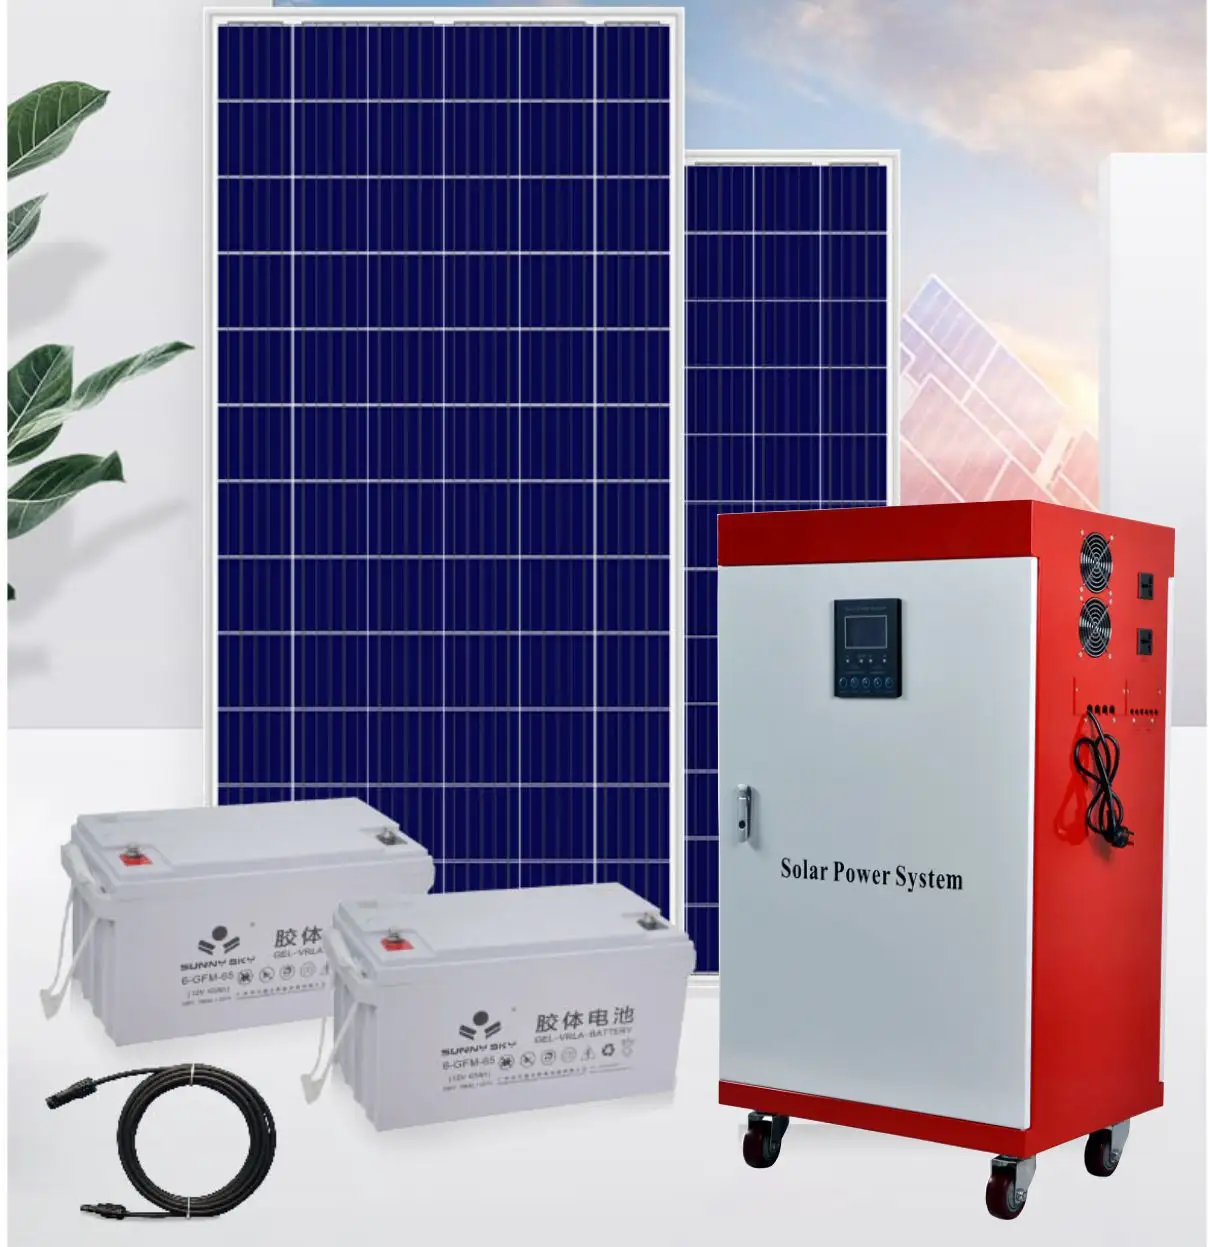 Sistema solar de geração de energia fotovoltaica completa fora da rede, 3kw-30KW, para uso doméstico, para montagem em telhado, sistema de energia solar